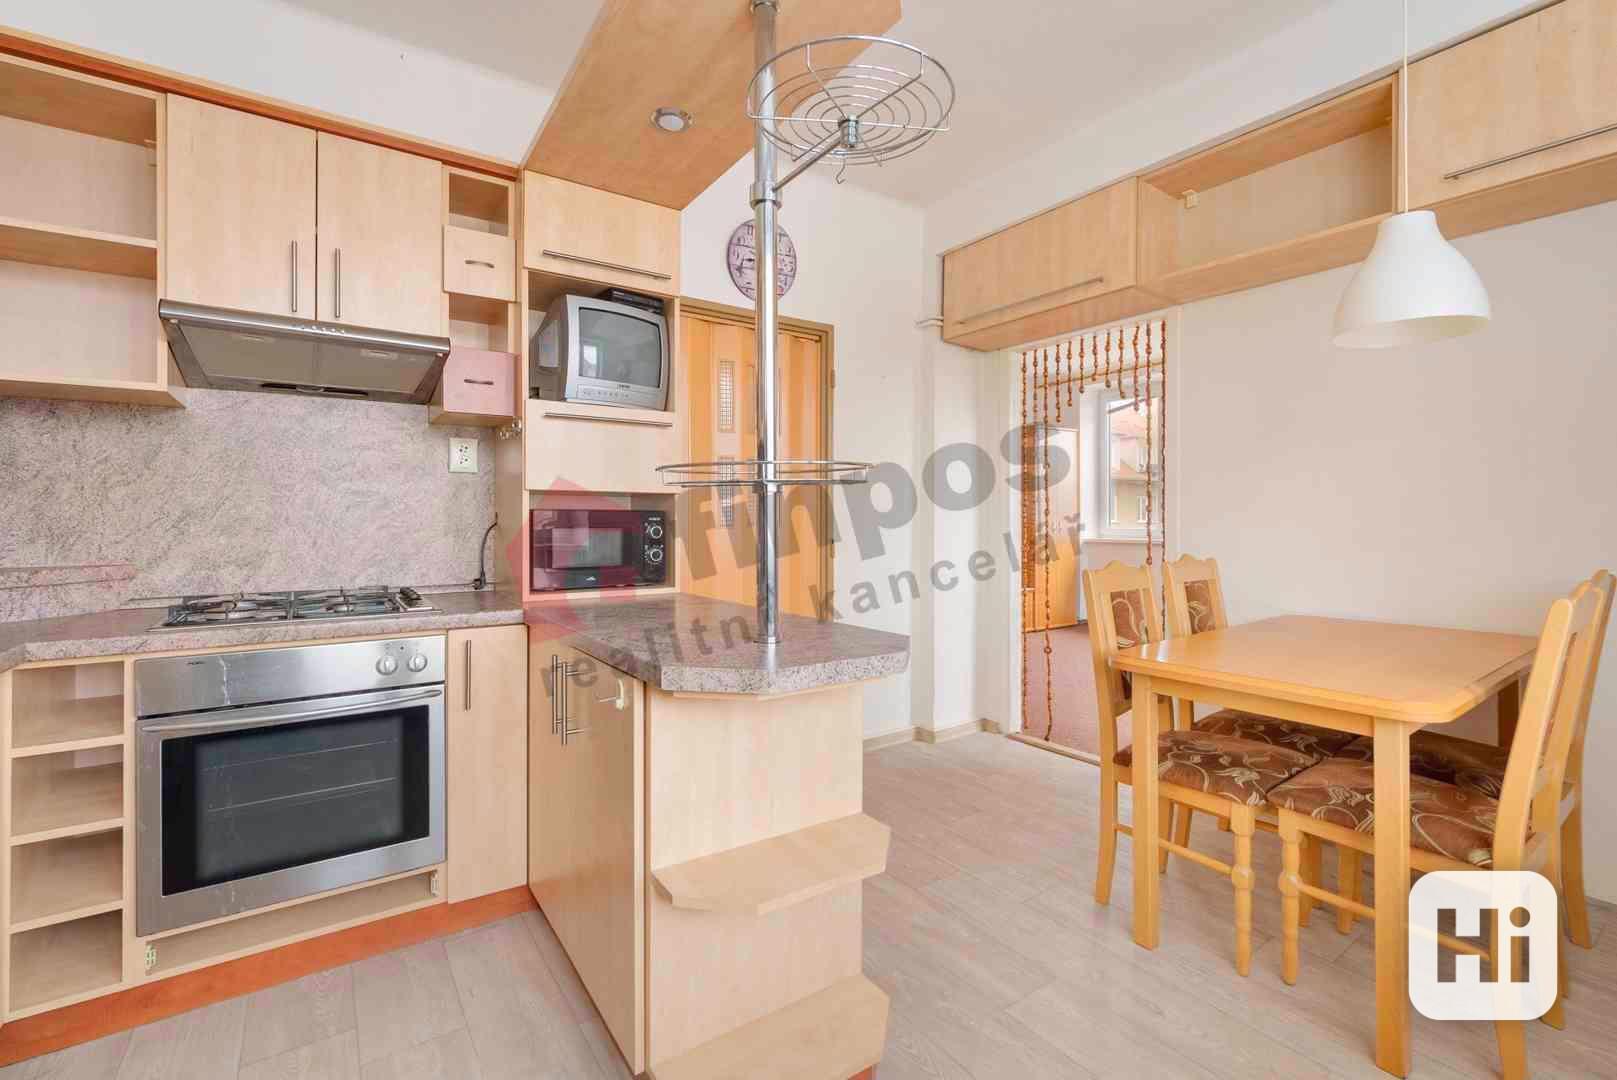 Prodej bytu 2+1 64 m2 v Bzenci, okres Hodonín - foto 1